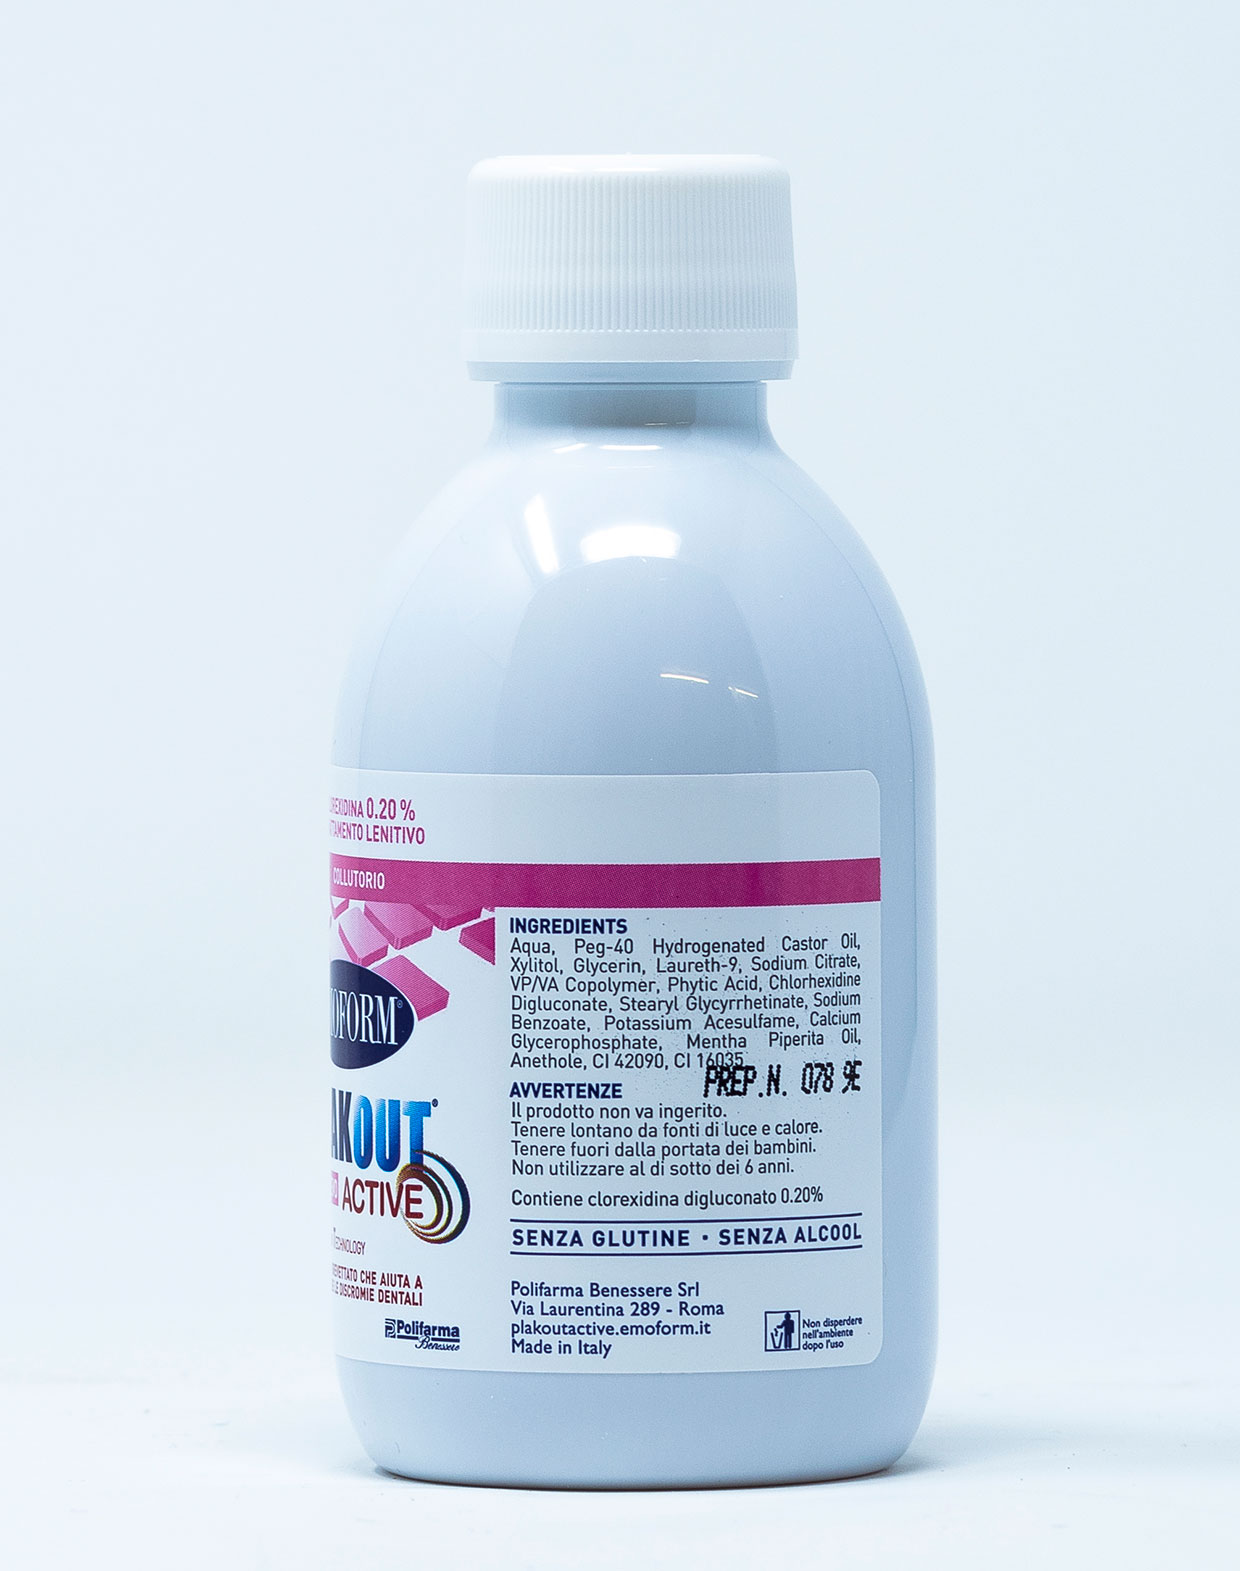 Emoform Collutorio Plak Out  Active Sollievo 0,20 % – 200 ml